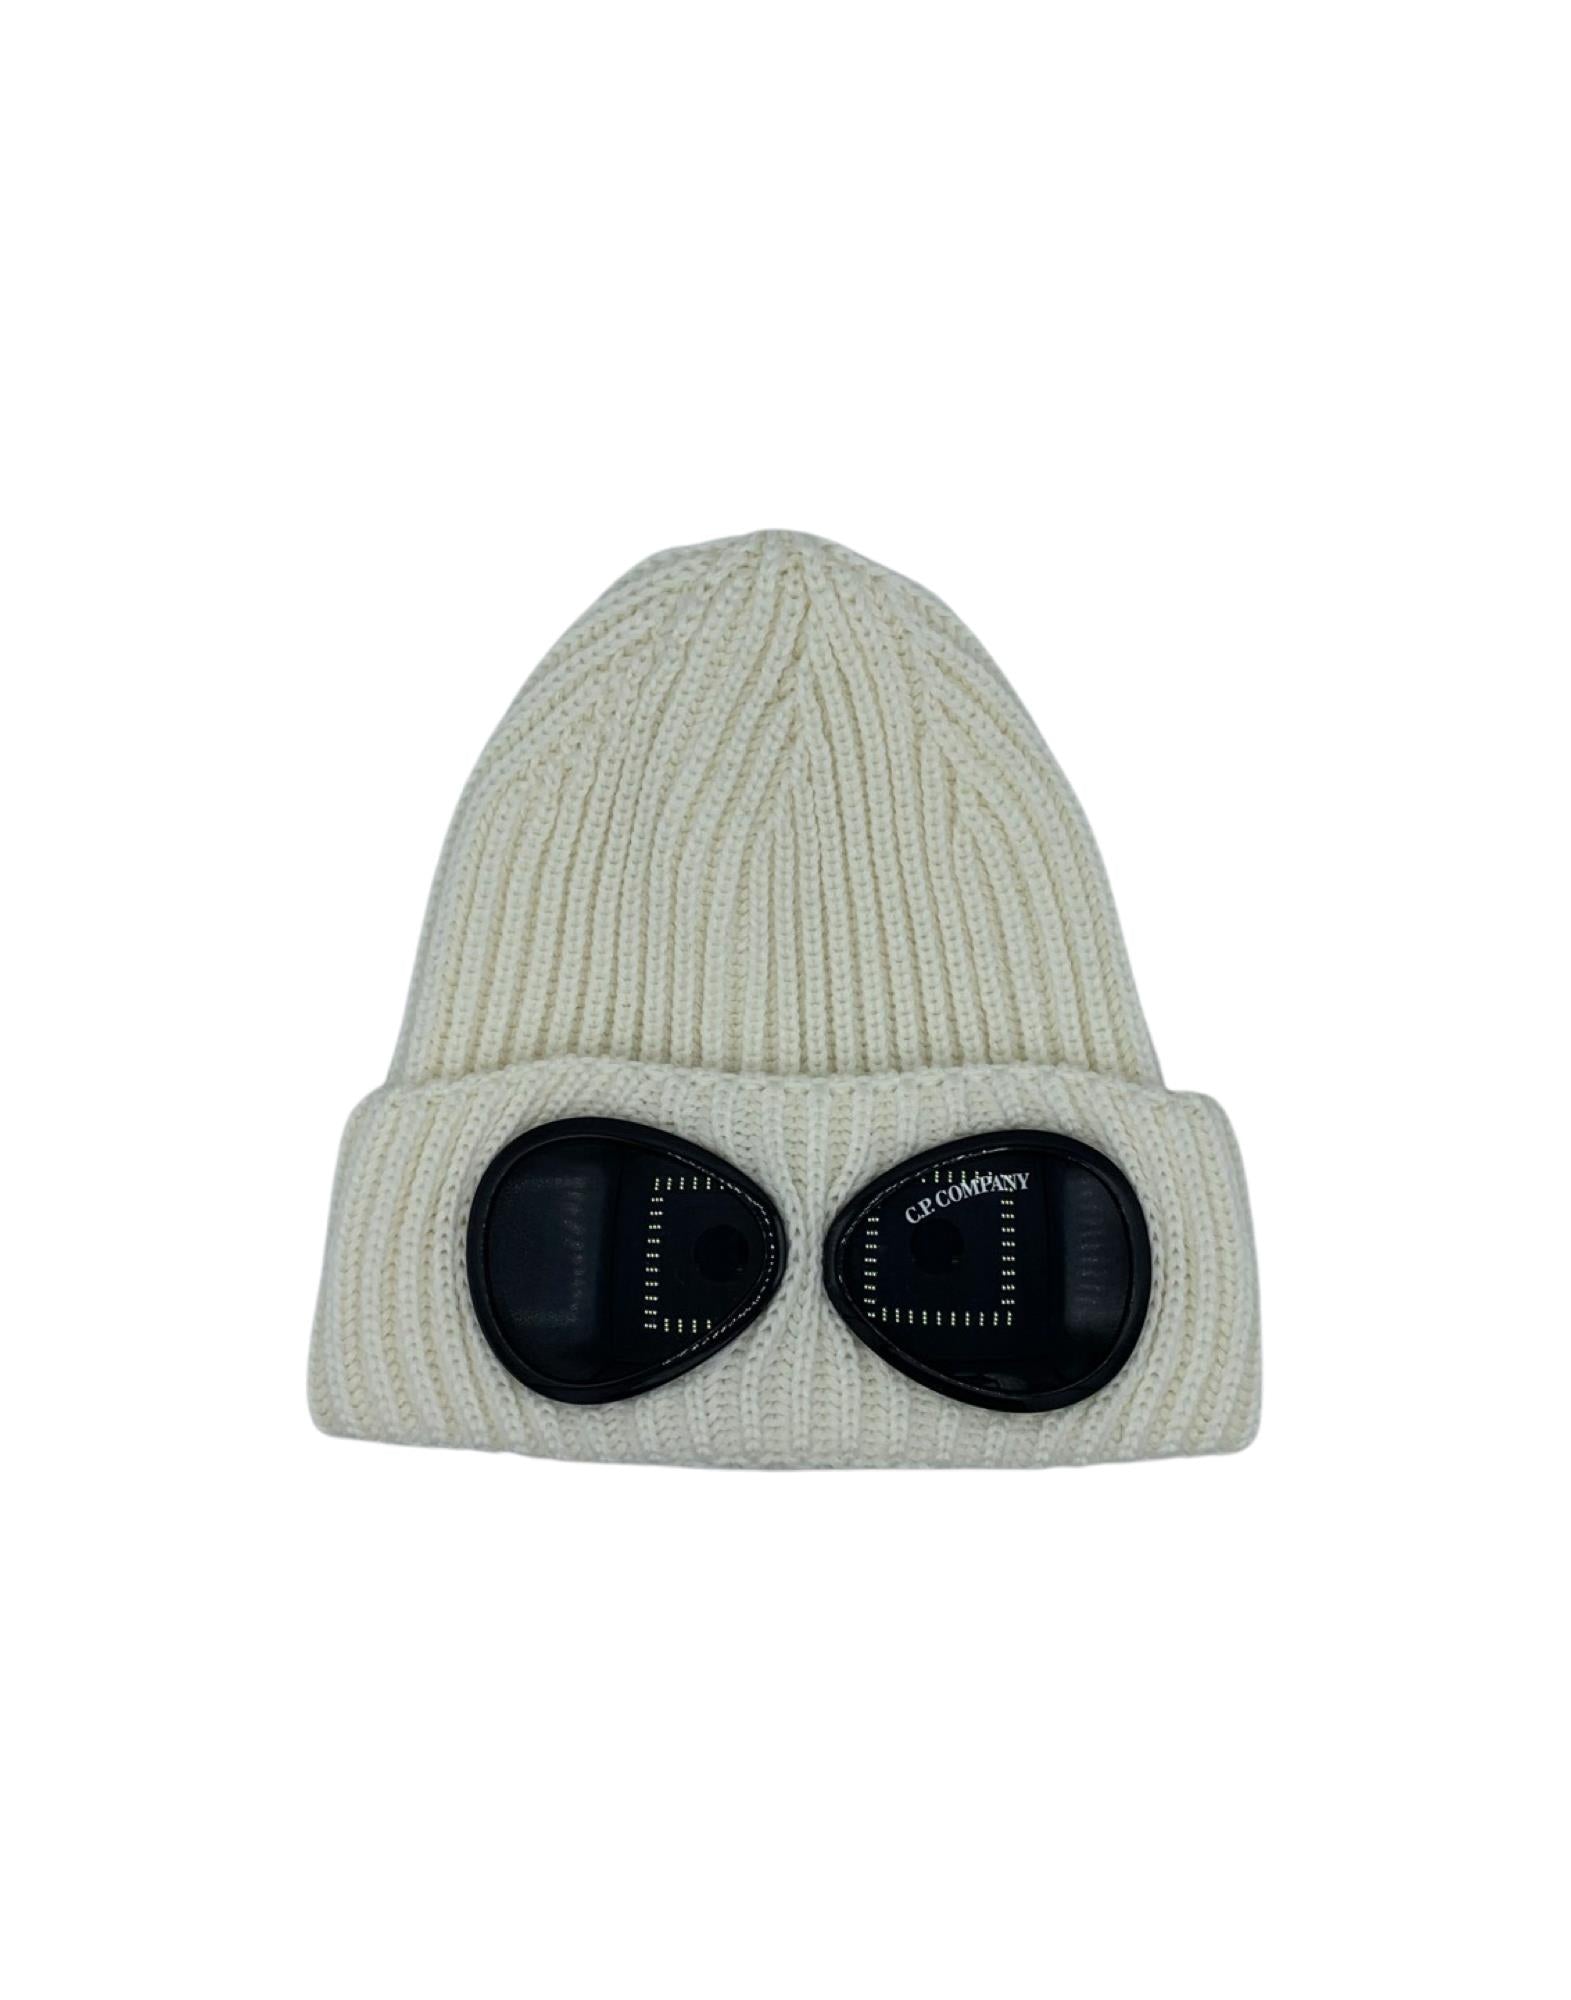 C.p. Company white goggle hat - SO Treviso